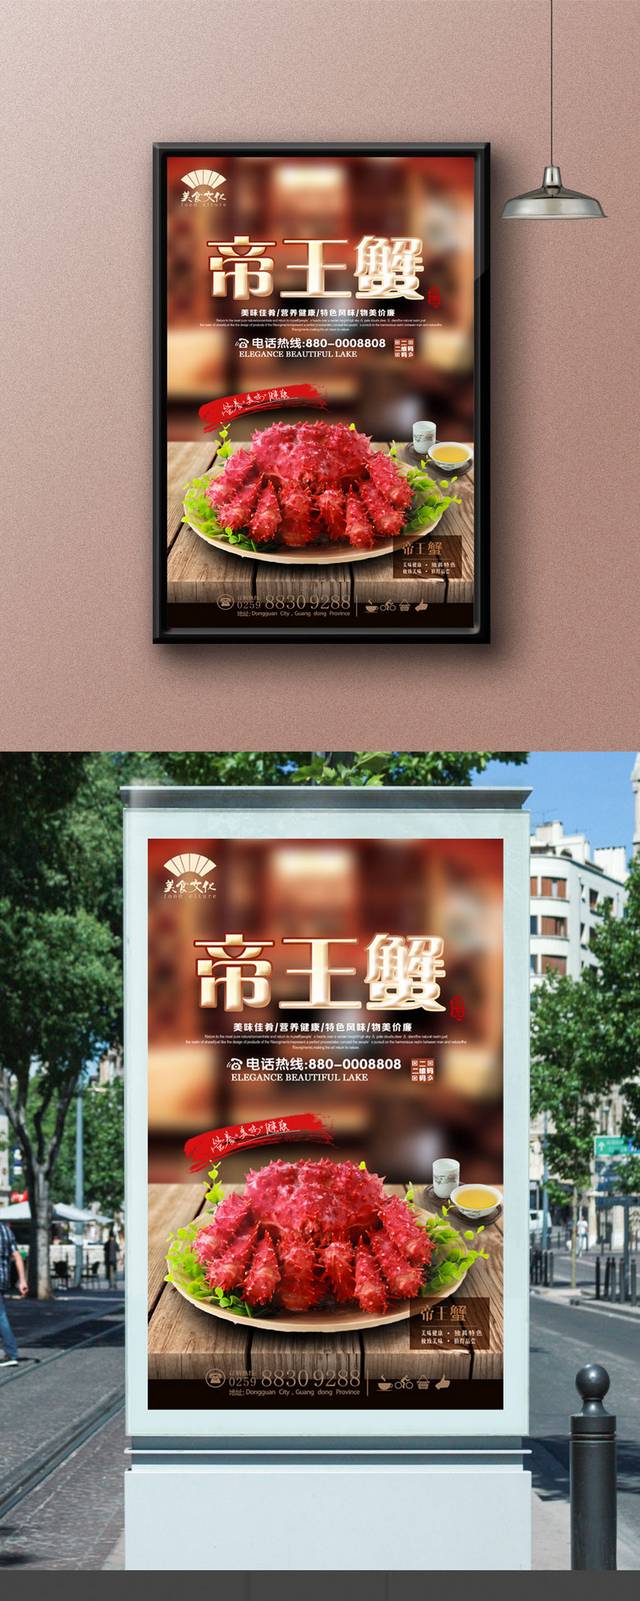 高清帝王蟹宣传海报设计模板